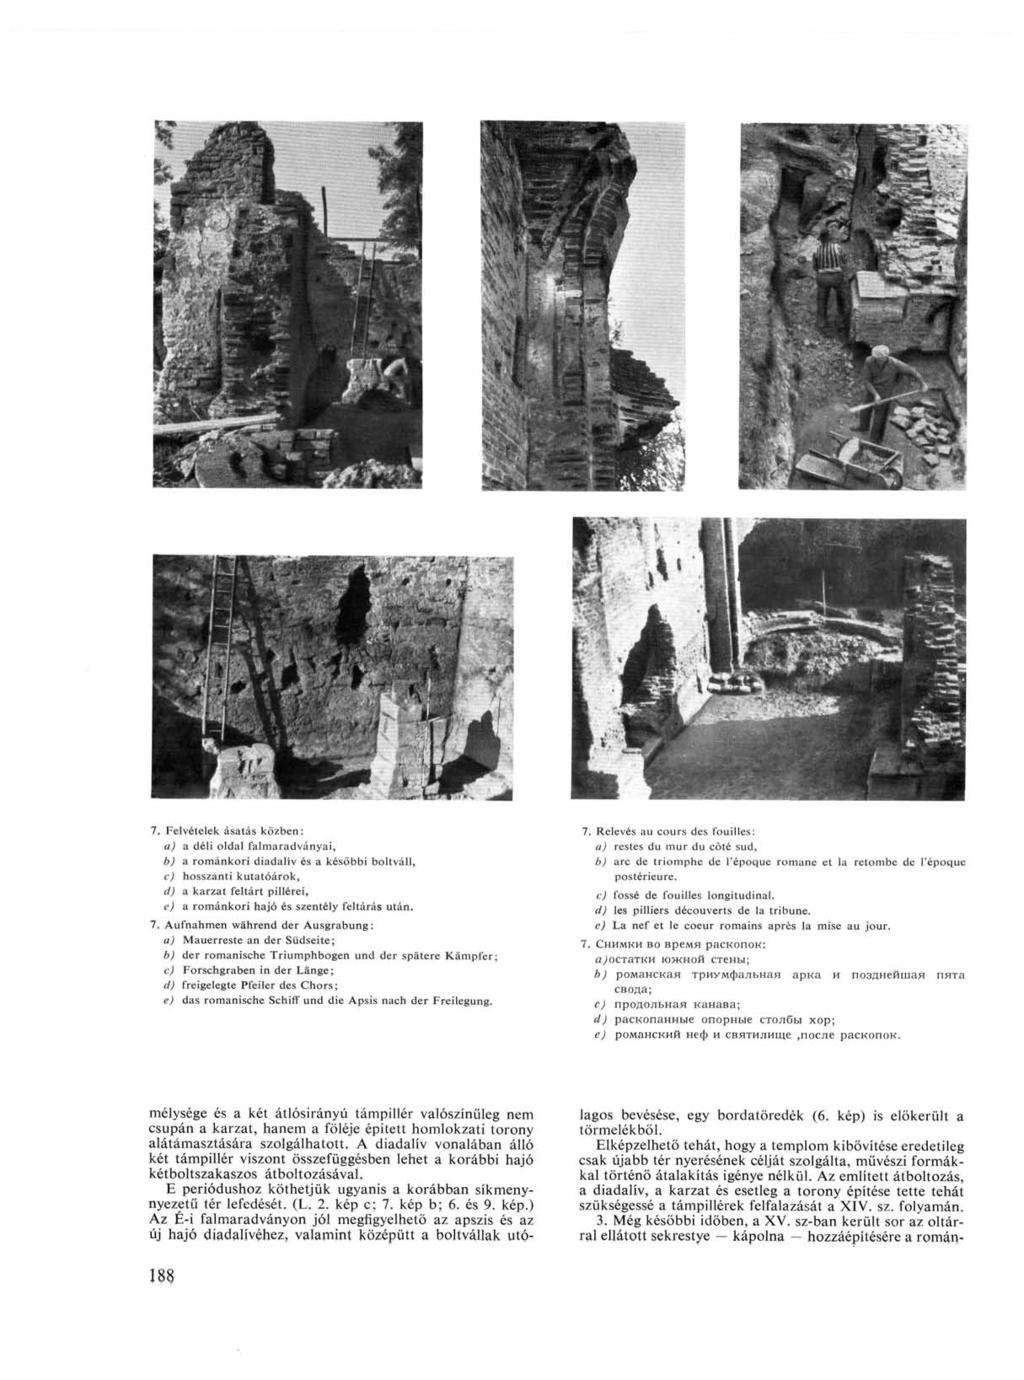 Felv6telek ásatás közben: a) a déli oldal falmaradványai, b) a románkori diadalív és a későbbi boltváll, c) hosszanti kutatóárok, d) a karzat feltárt pillérei, e) a románkori hajó és szentély